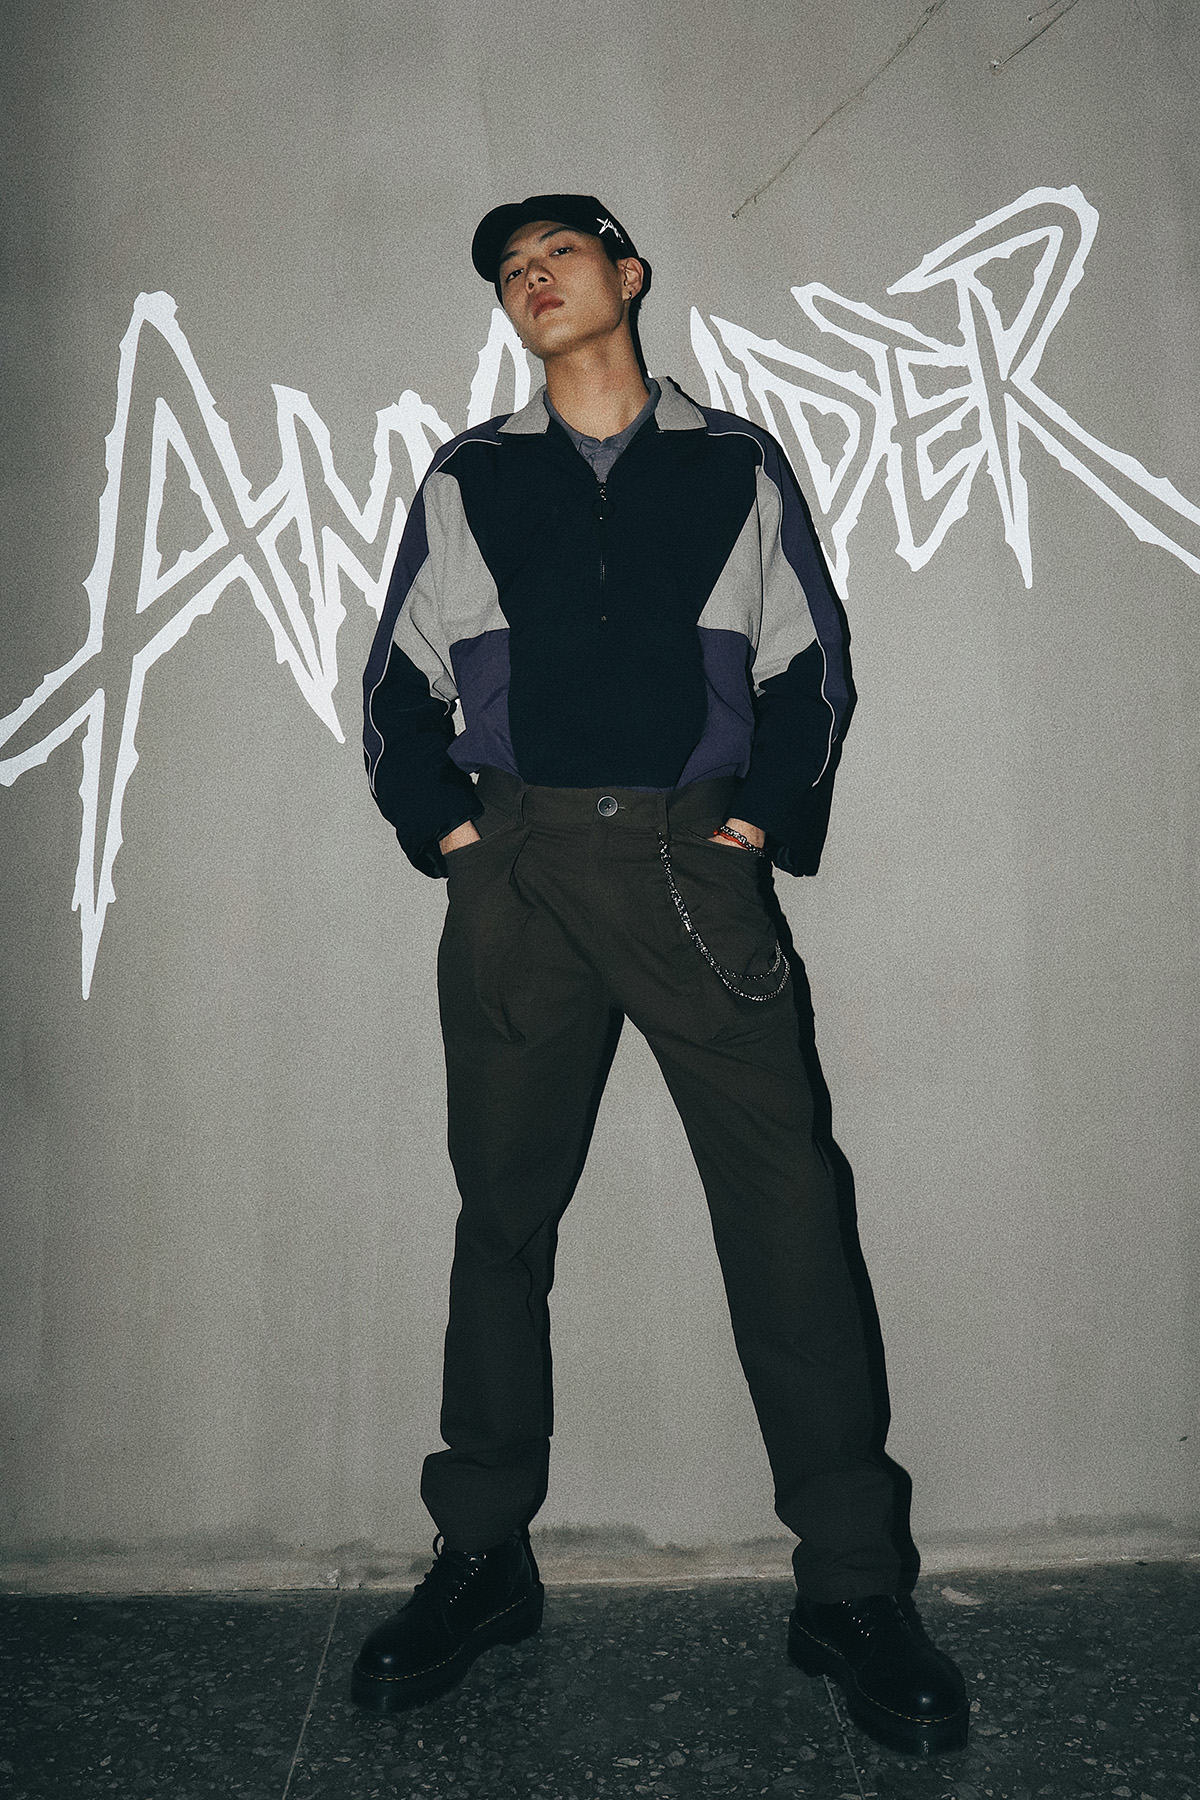 澳大利亚男装品牌AMXANDER拥抱市场春天 ——WAVE showroom 独家访谈AMXANDER设计师